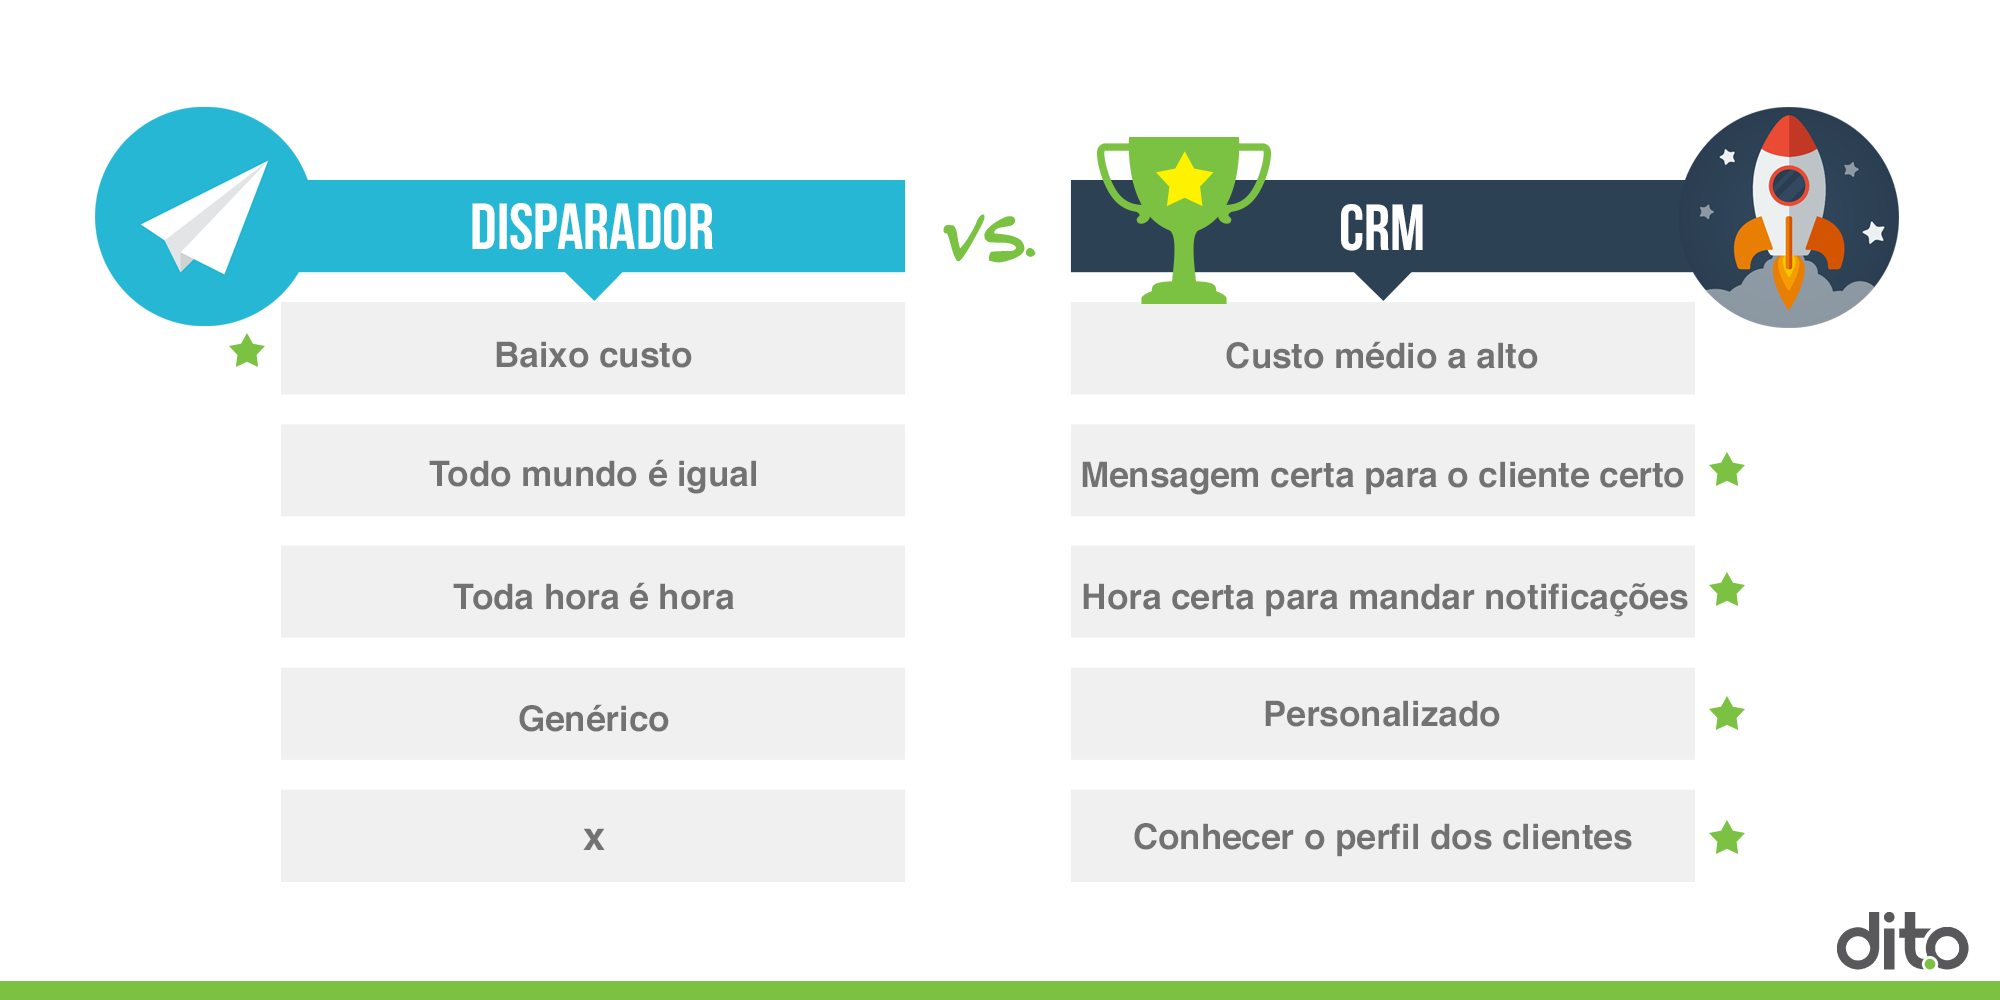 Comparação entre Disparador e CRM.